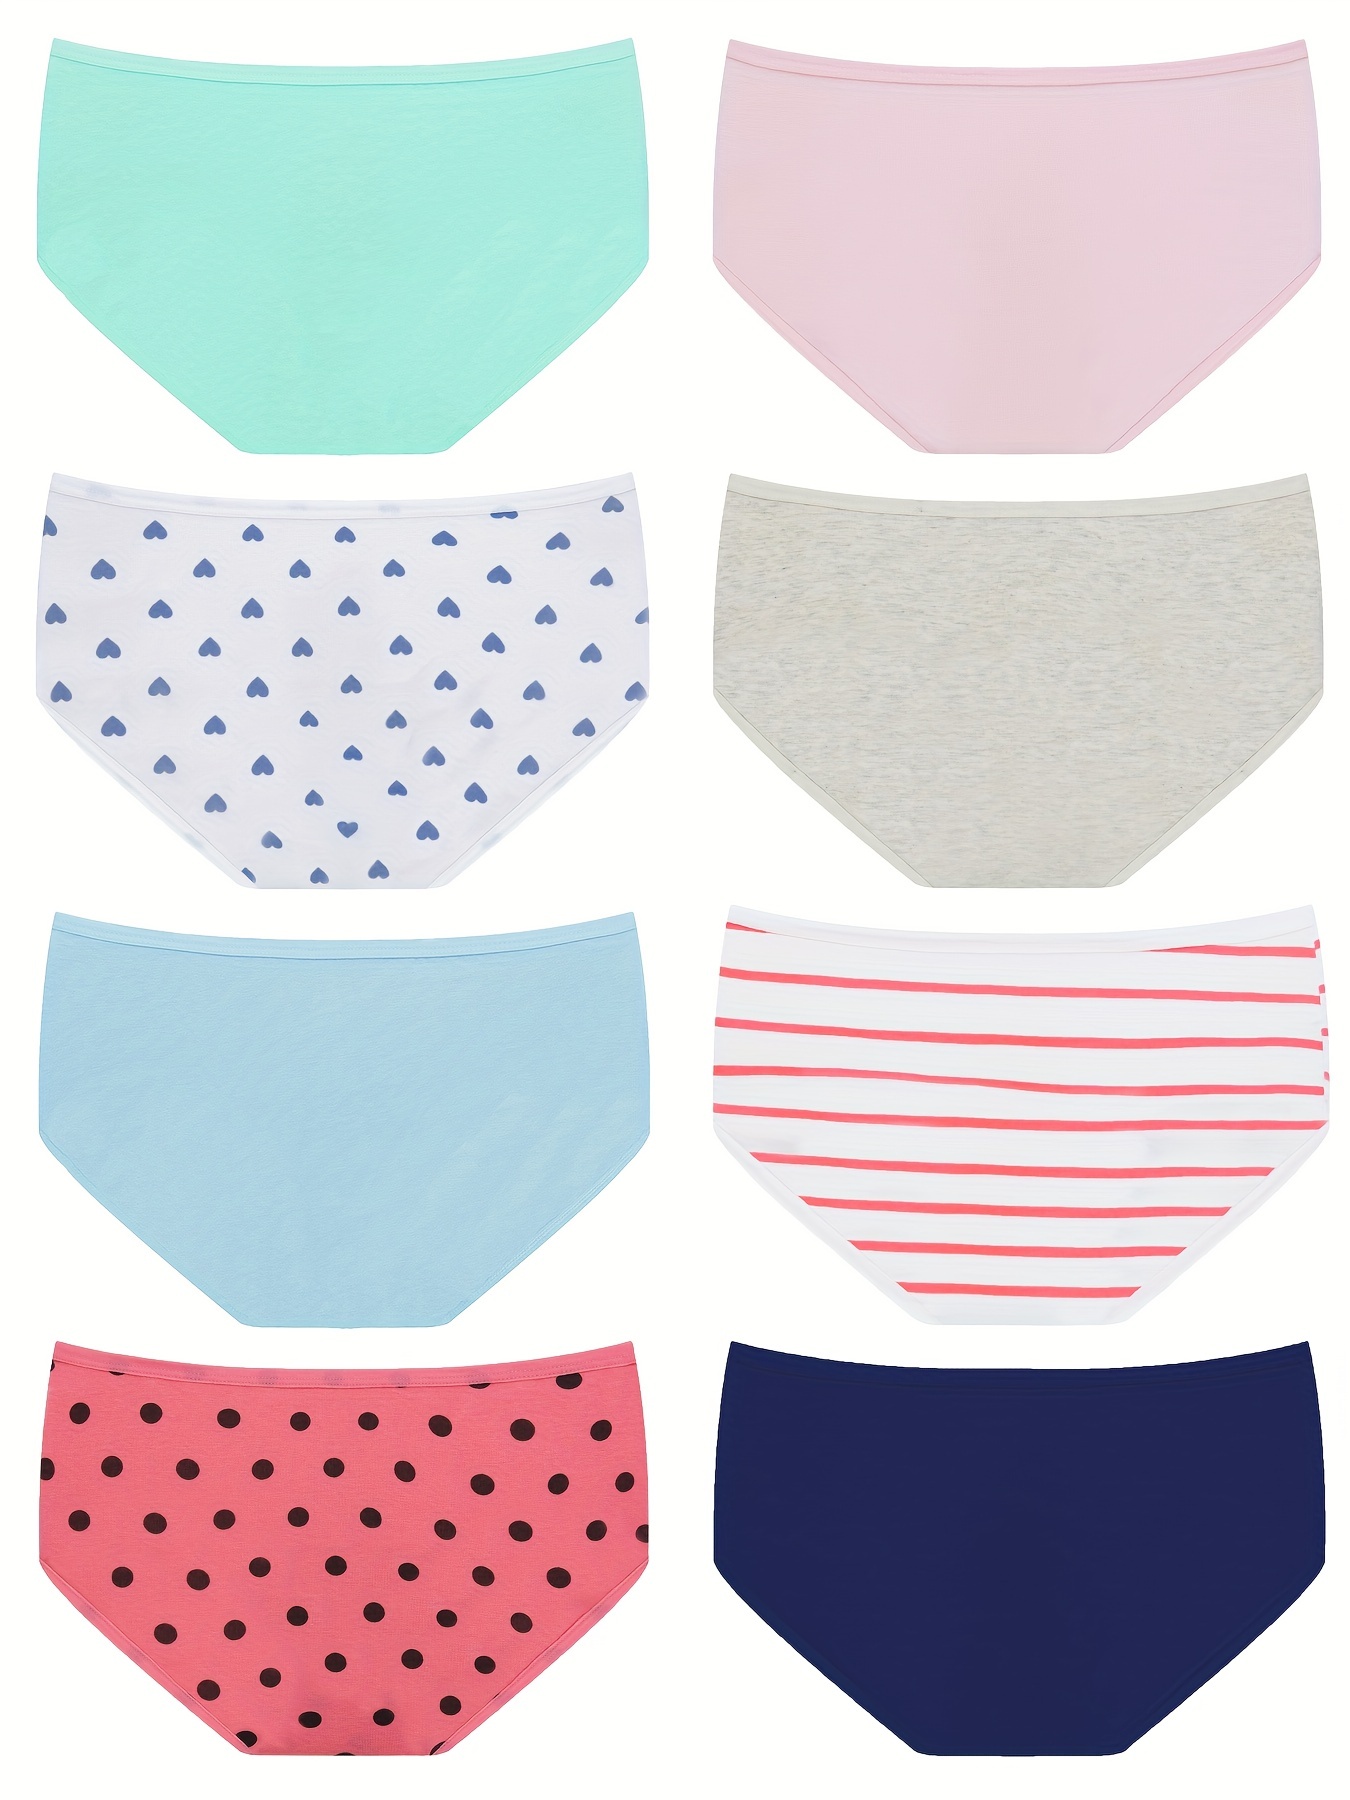 Cheap Girls UnderwearTeenage Panties Cotton Underpants Teen Girl Briefs  8-14Y